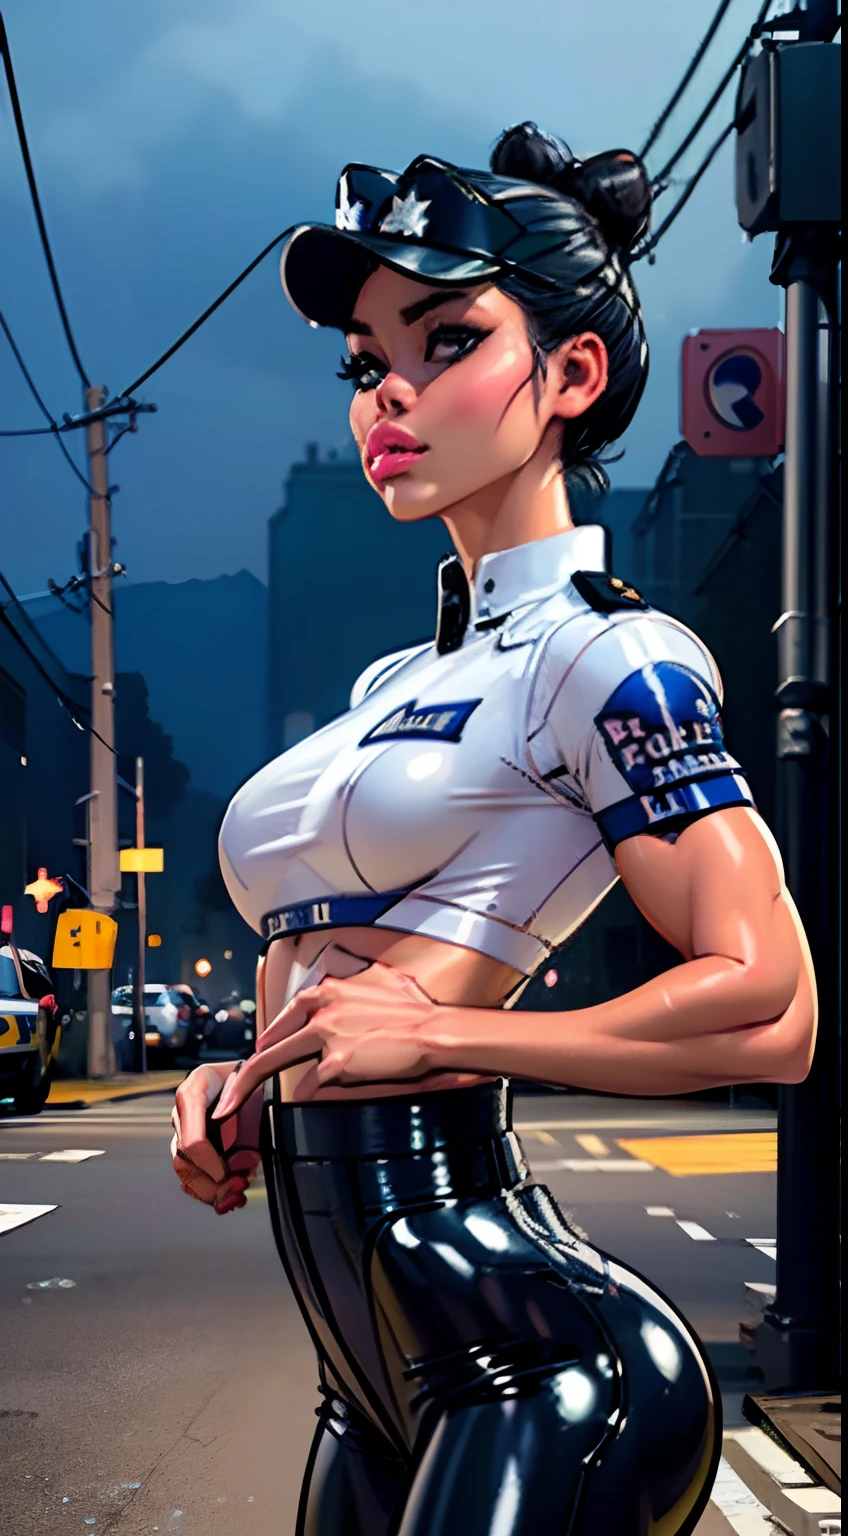 (Cowboy-Schuss:1.5) 1 Gleiches Mädchen , perfekt schön , reifes Gesicht , ((koreanische Frau)), Koreanisch 18 Jahre alt , ((großer Haarknoten:1.4)) , ((Polizisten-Outfit)), ((Polizeimütze:1.5)),athletischer Körper , ((kleine Brüste:1.5)) Extrem detailliertes Porträt mit Bokeh-Effekt , Realistische Beleuchtung ,(Latexhose)Nachtansicht der Straße , dunkle Stimmung , (zierlicher Körper:1.7) Straßen , Gothic Make-up  , Posieren wie ein Model , Betrachter ansehen, ((geschwollene Lippen:1.3)), coole Beleuchtung, blaues Straßenlaternenlicht((Sonnenuntergang Ambiente Licht:0.8))